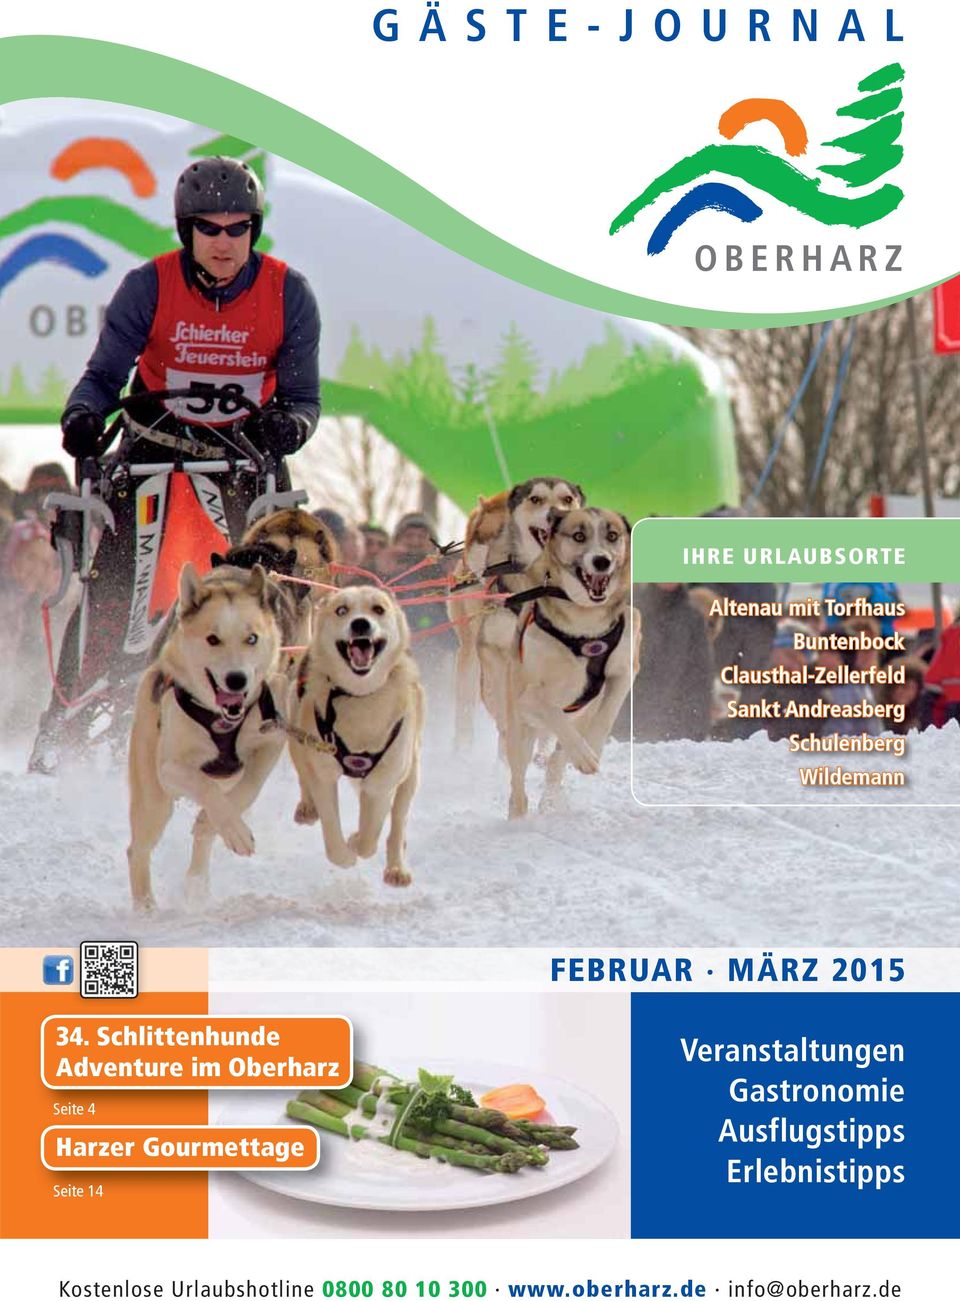 Schlittenhunde Adventure im Oberharz Seite 4 Harzer Gourmettage Seite 14